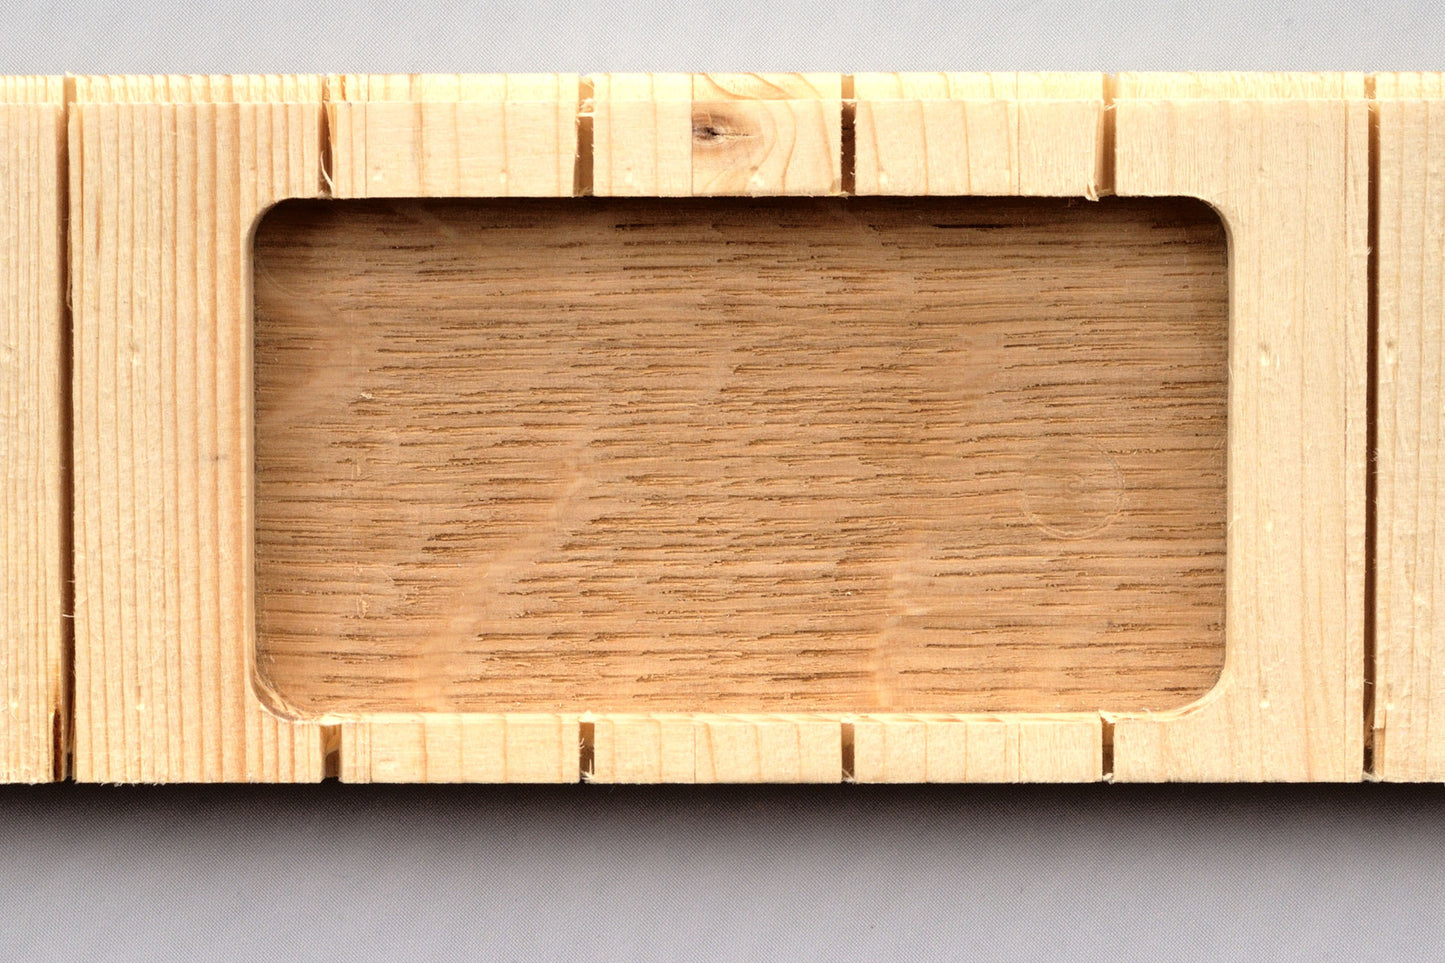 Board prepared for Fidbox